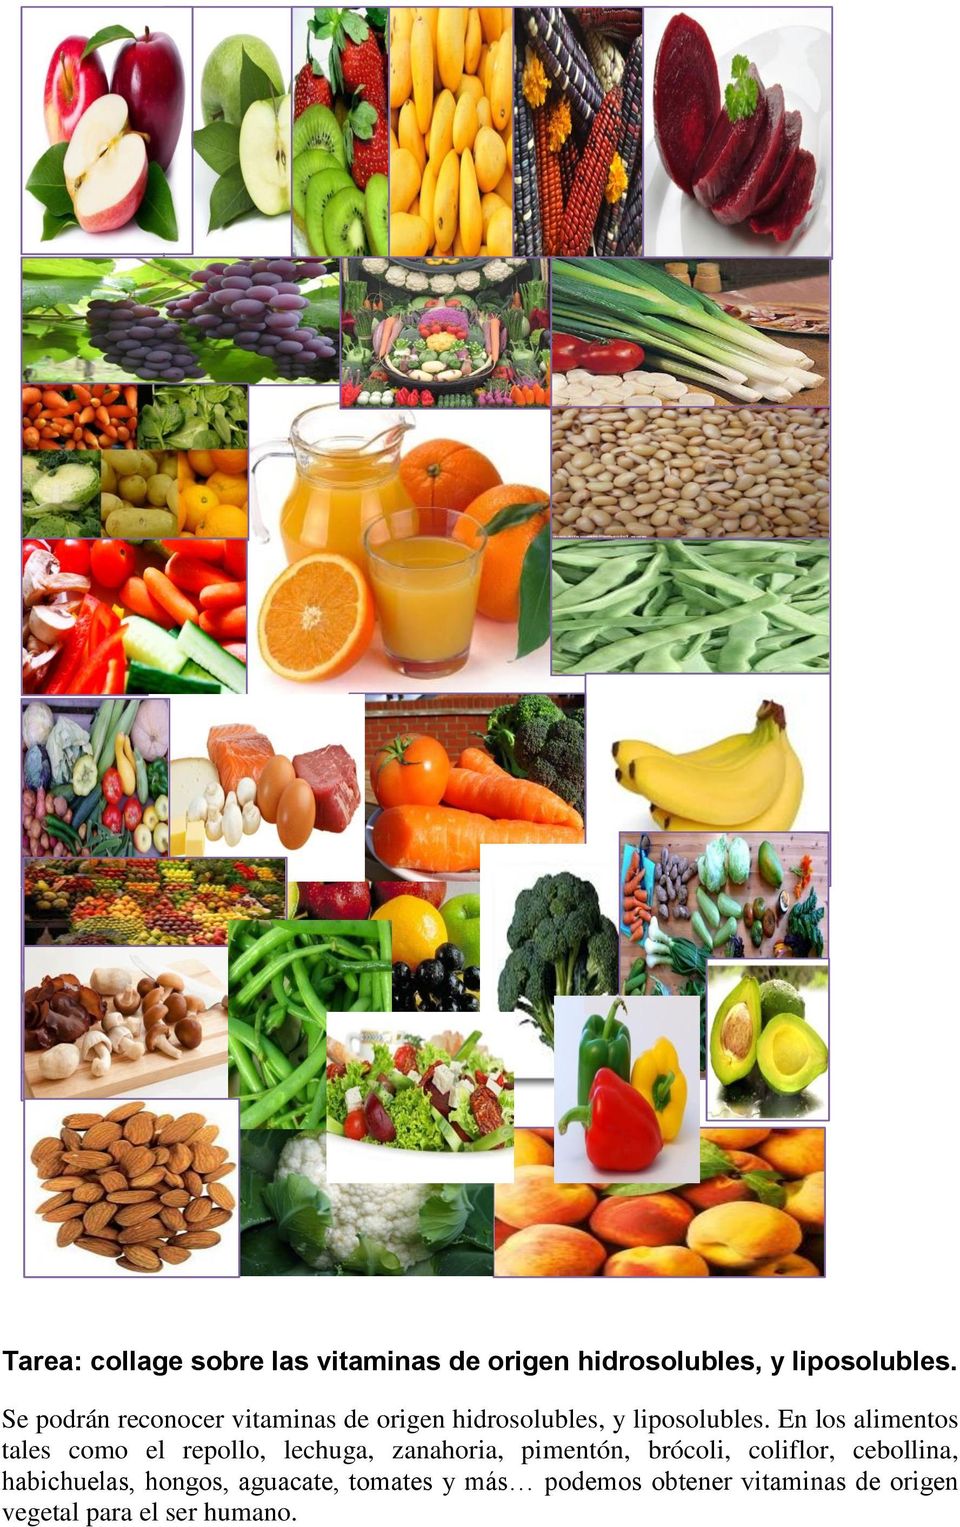 En los alimentos tales como el repollo, lechuga, zanahoria, pimentón, brócoli, coliflor,